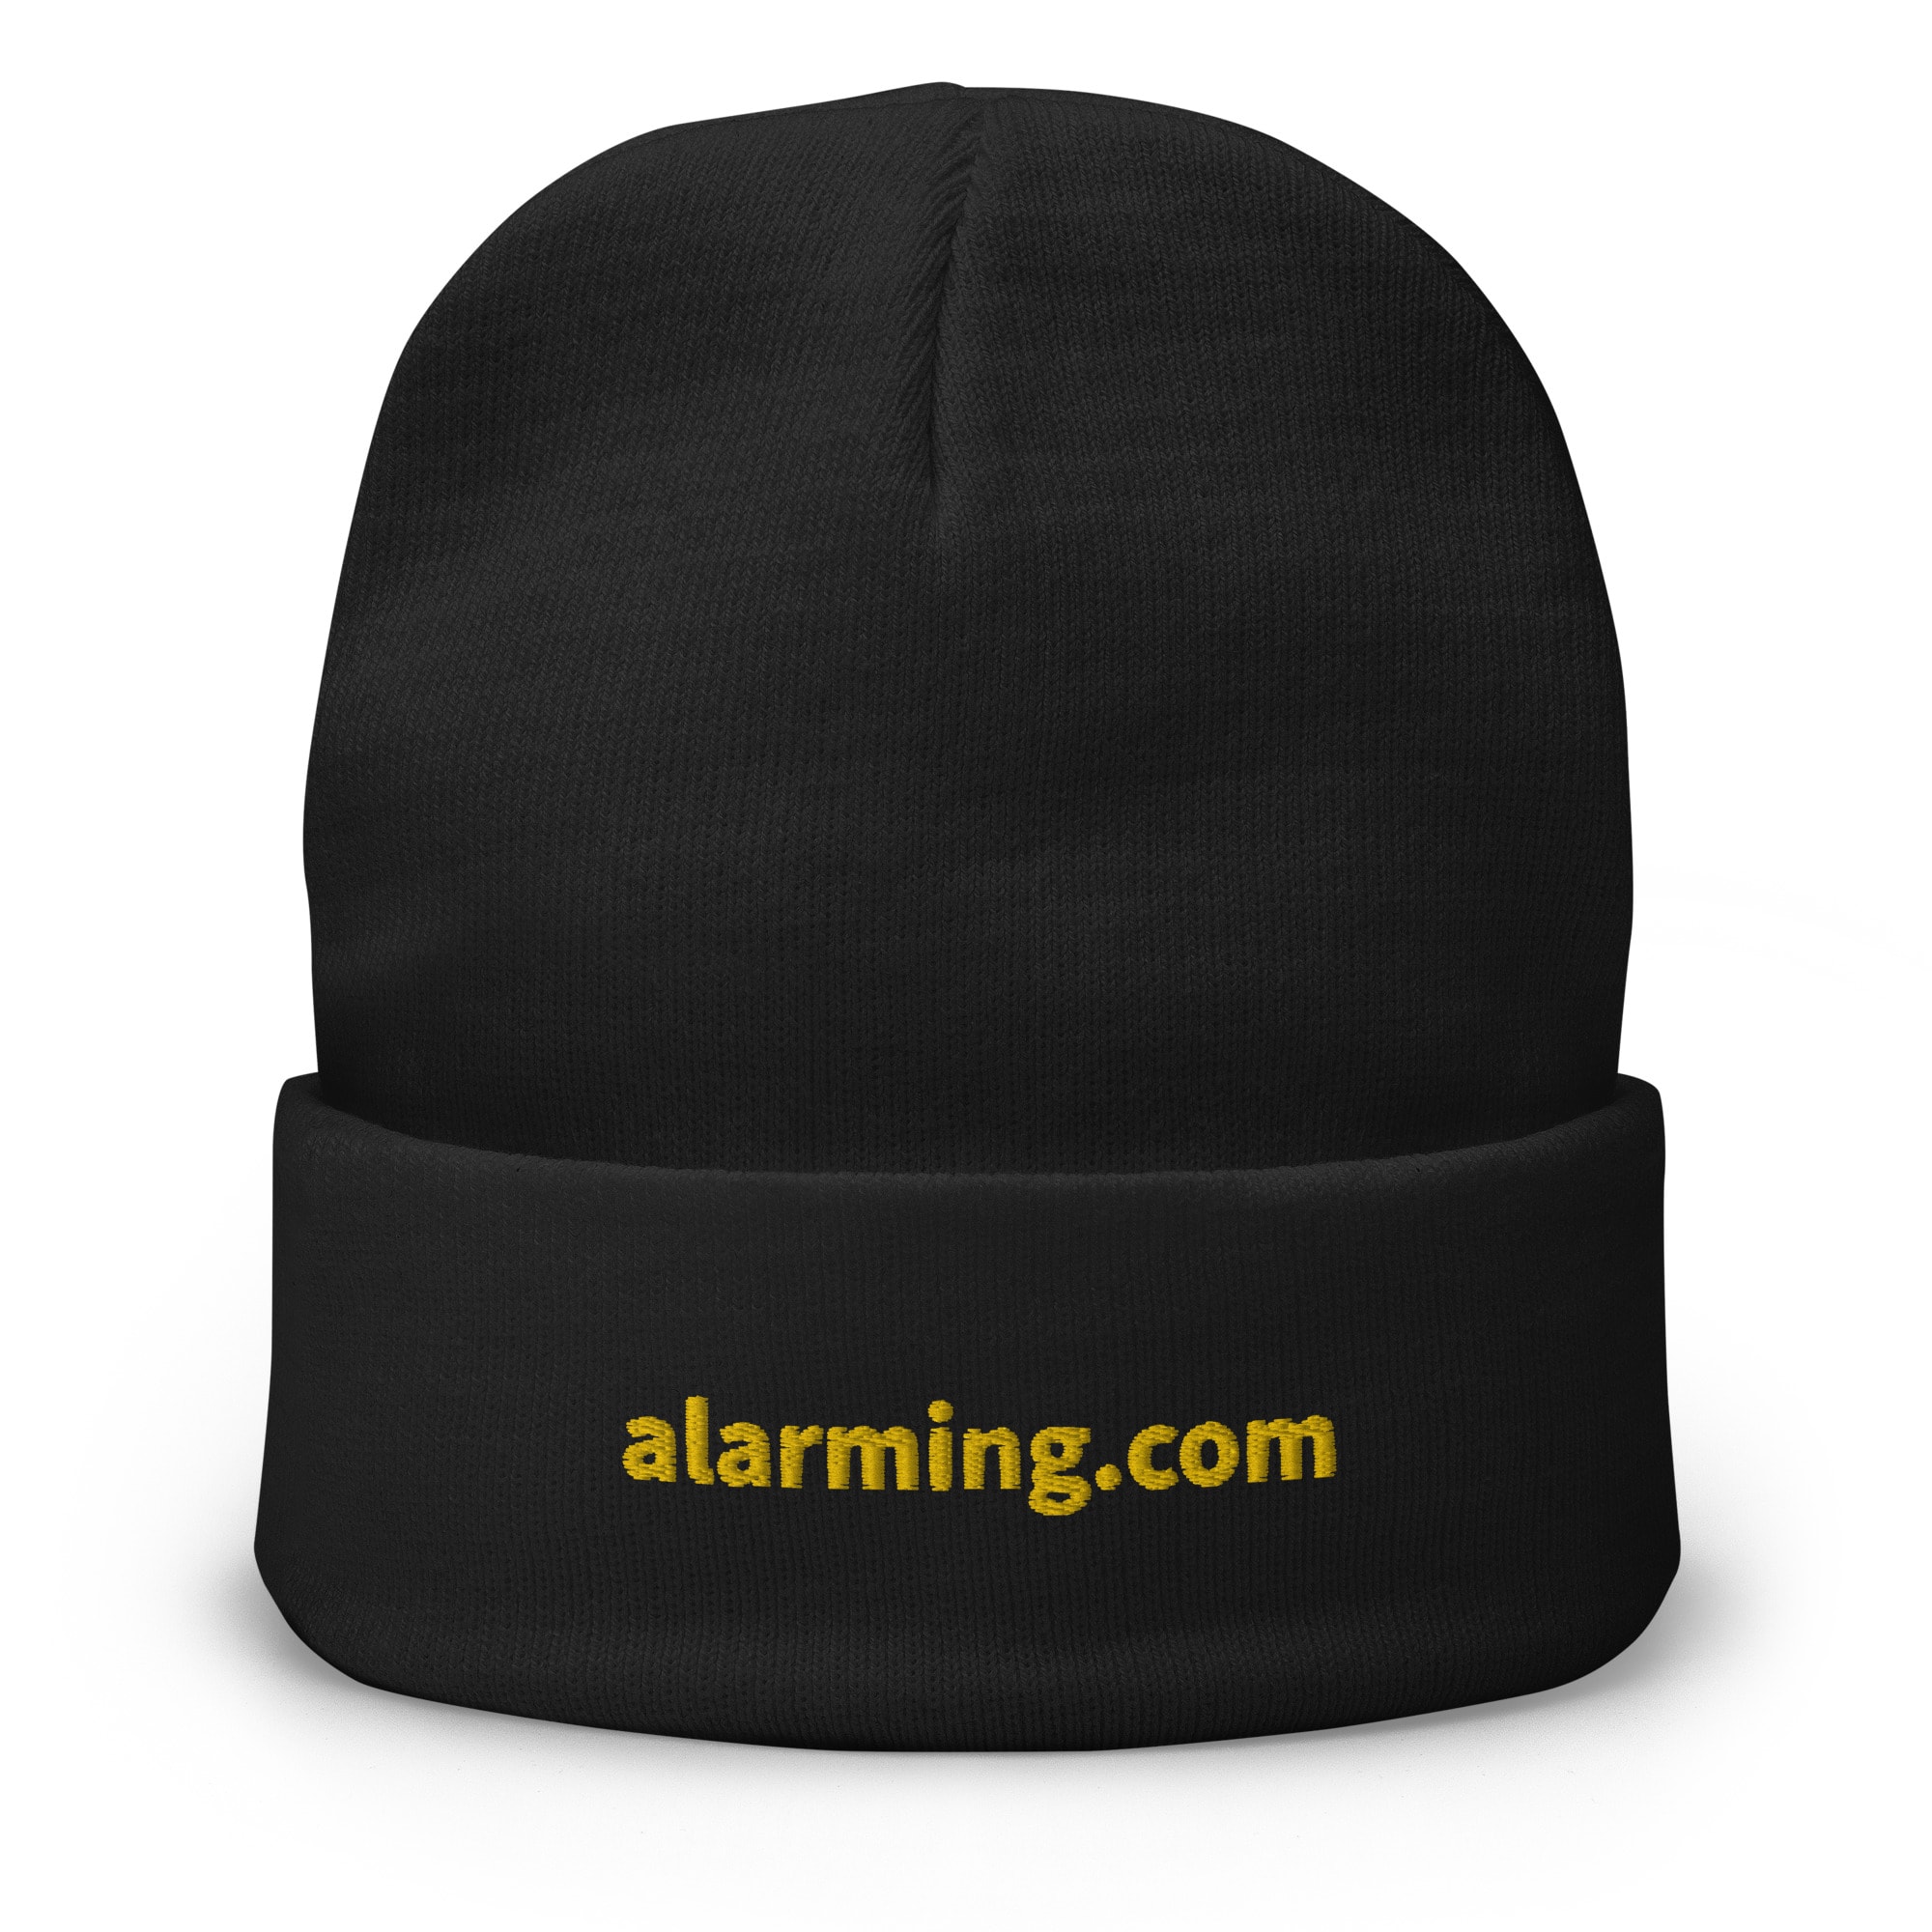 alarming.com Embroidered Beanie - Black